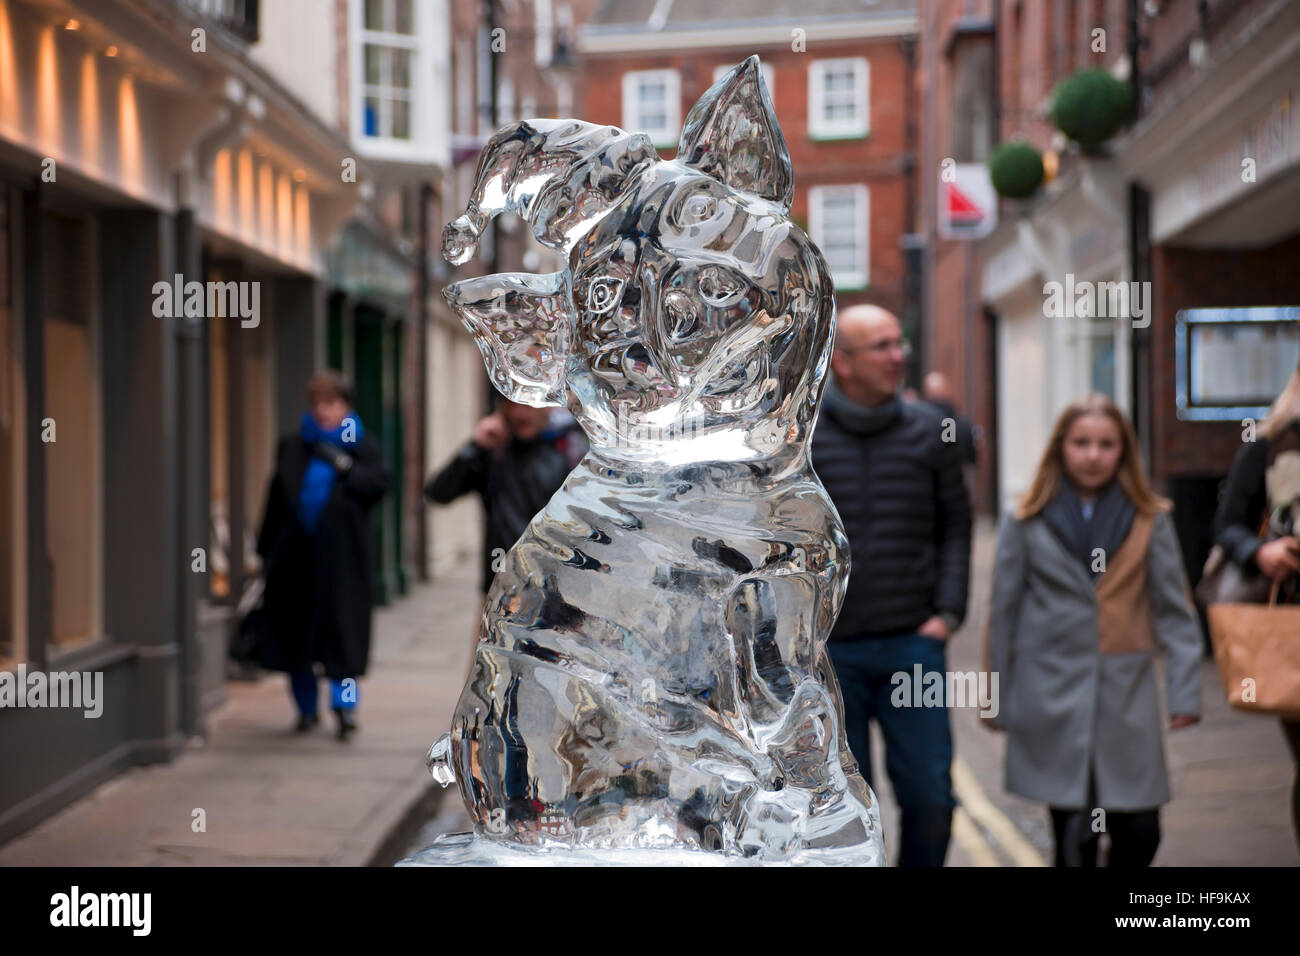 Visiteurs visiteurs touristes marchant par la sculpture de glace d'un porc Sur la piste de glace en hiver York North Yorkshire Angleterre Royaume-Uni Royaume-Uni Grande-Bretagne Banque D'Images